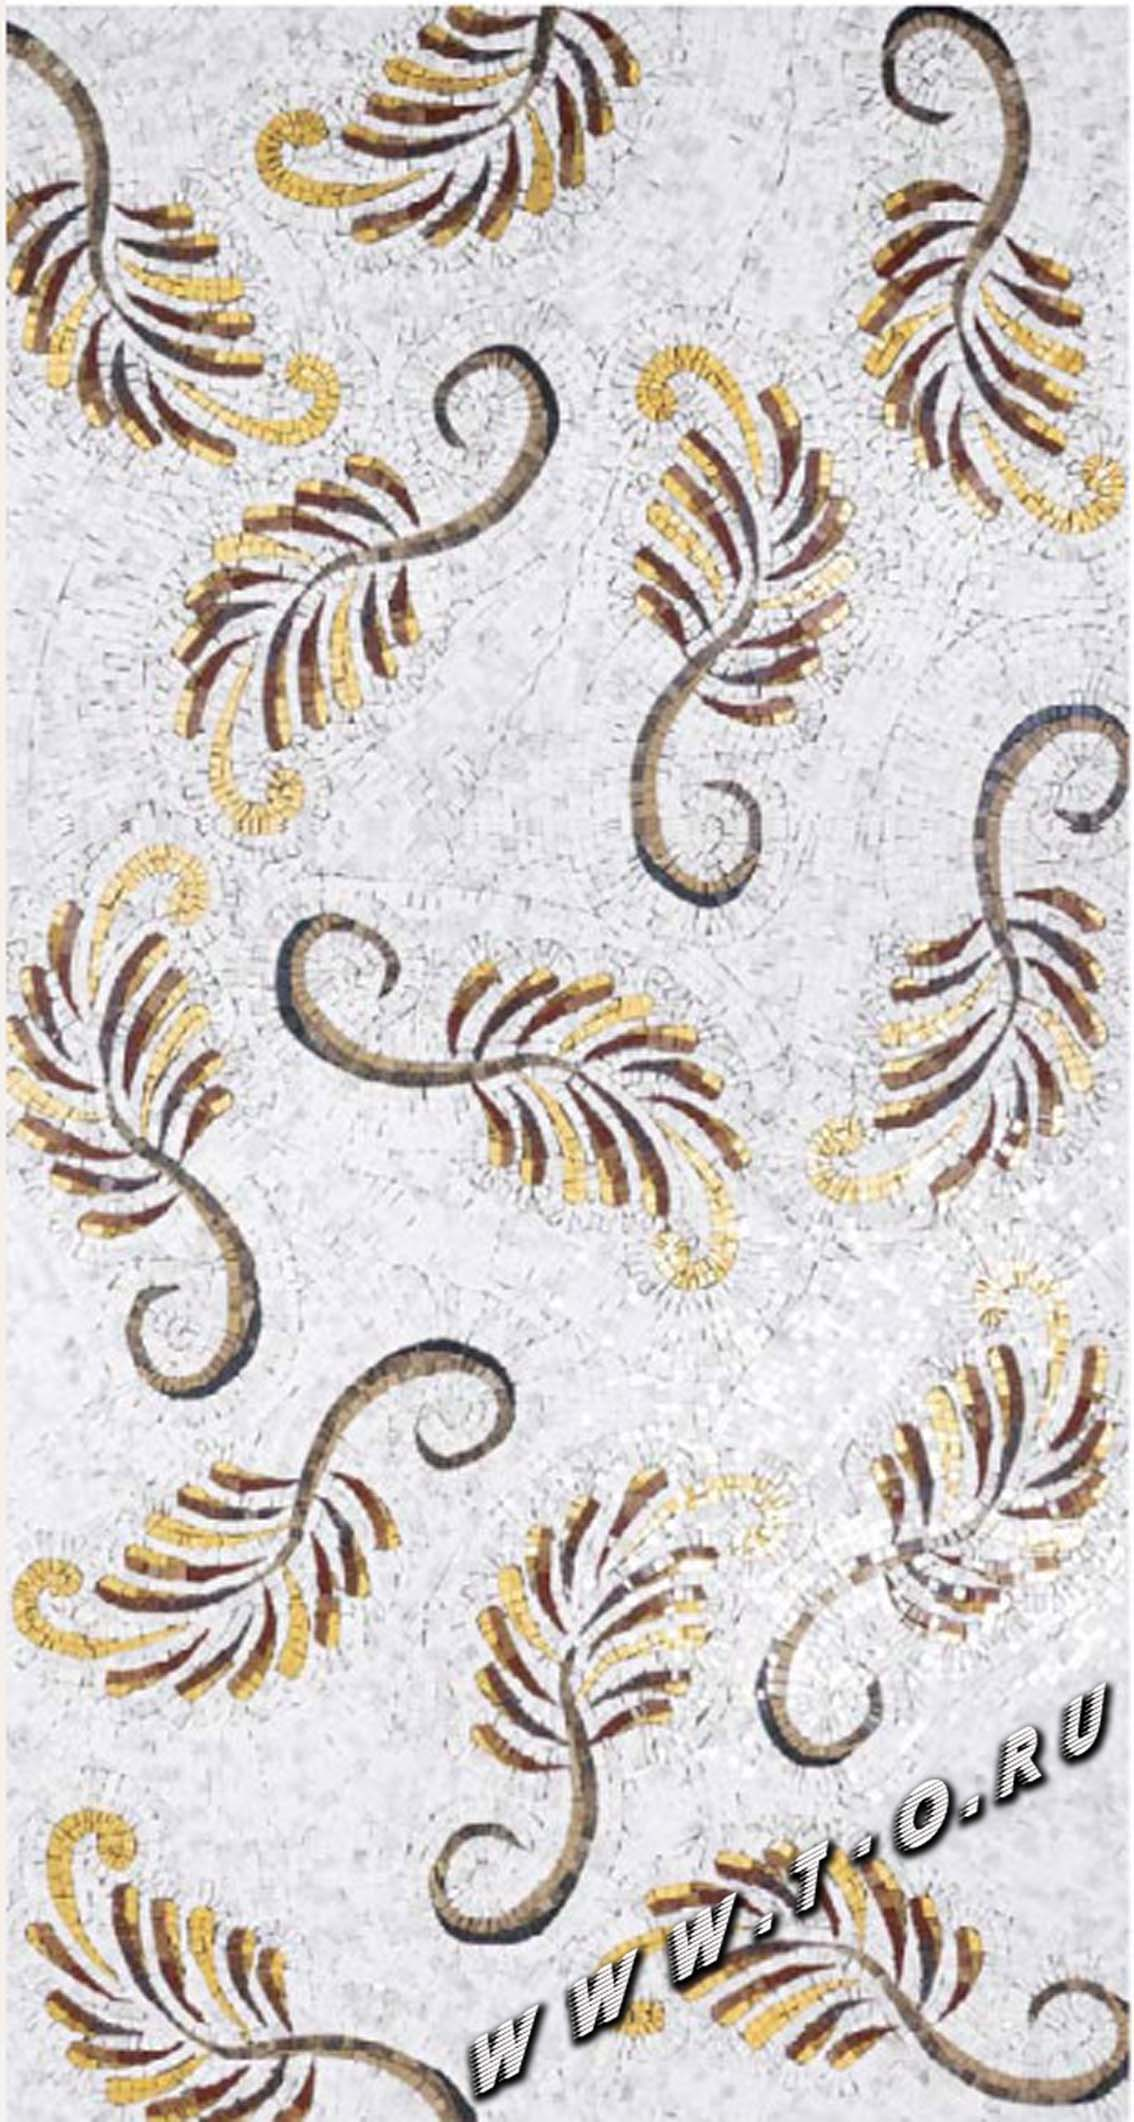 Мозаика из натурального камня - мозаичное панно для оформления ванных комнат бассейнов, пола, стен и потолков. Изготовление на заказ и продажа готовых